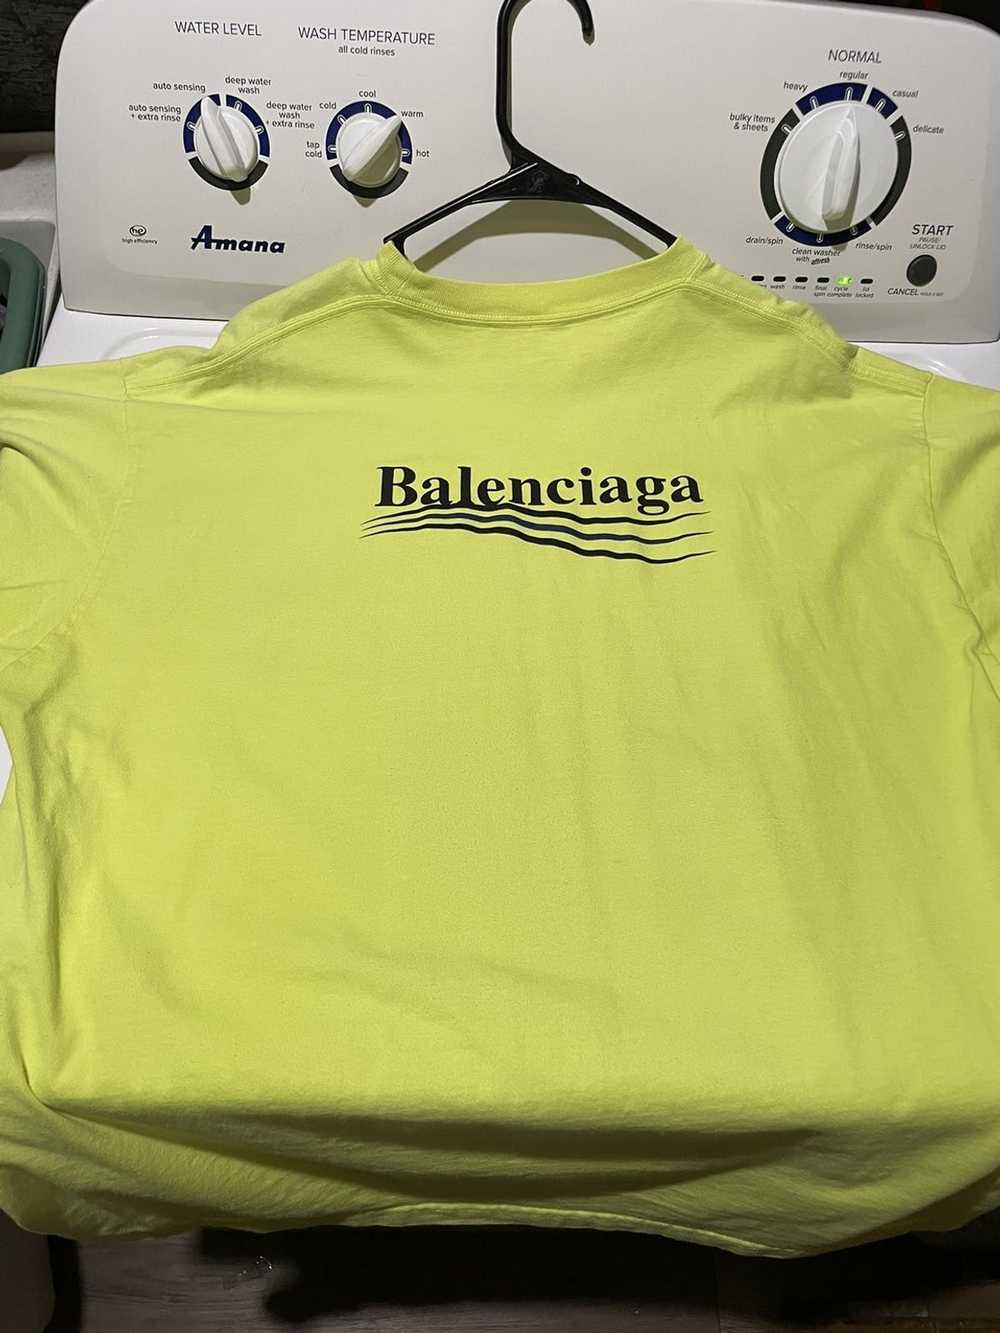 Balenciaga Balenciaga Men’s Campaign T-shirt - image 2